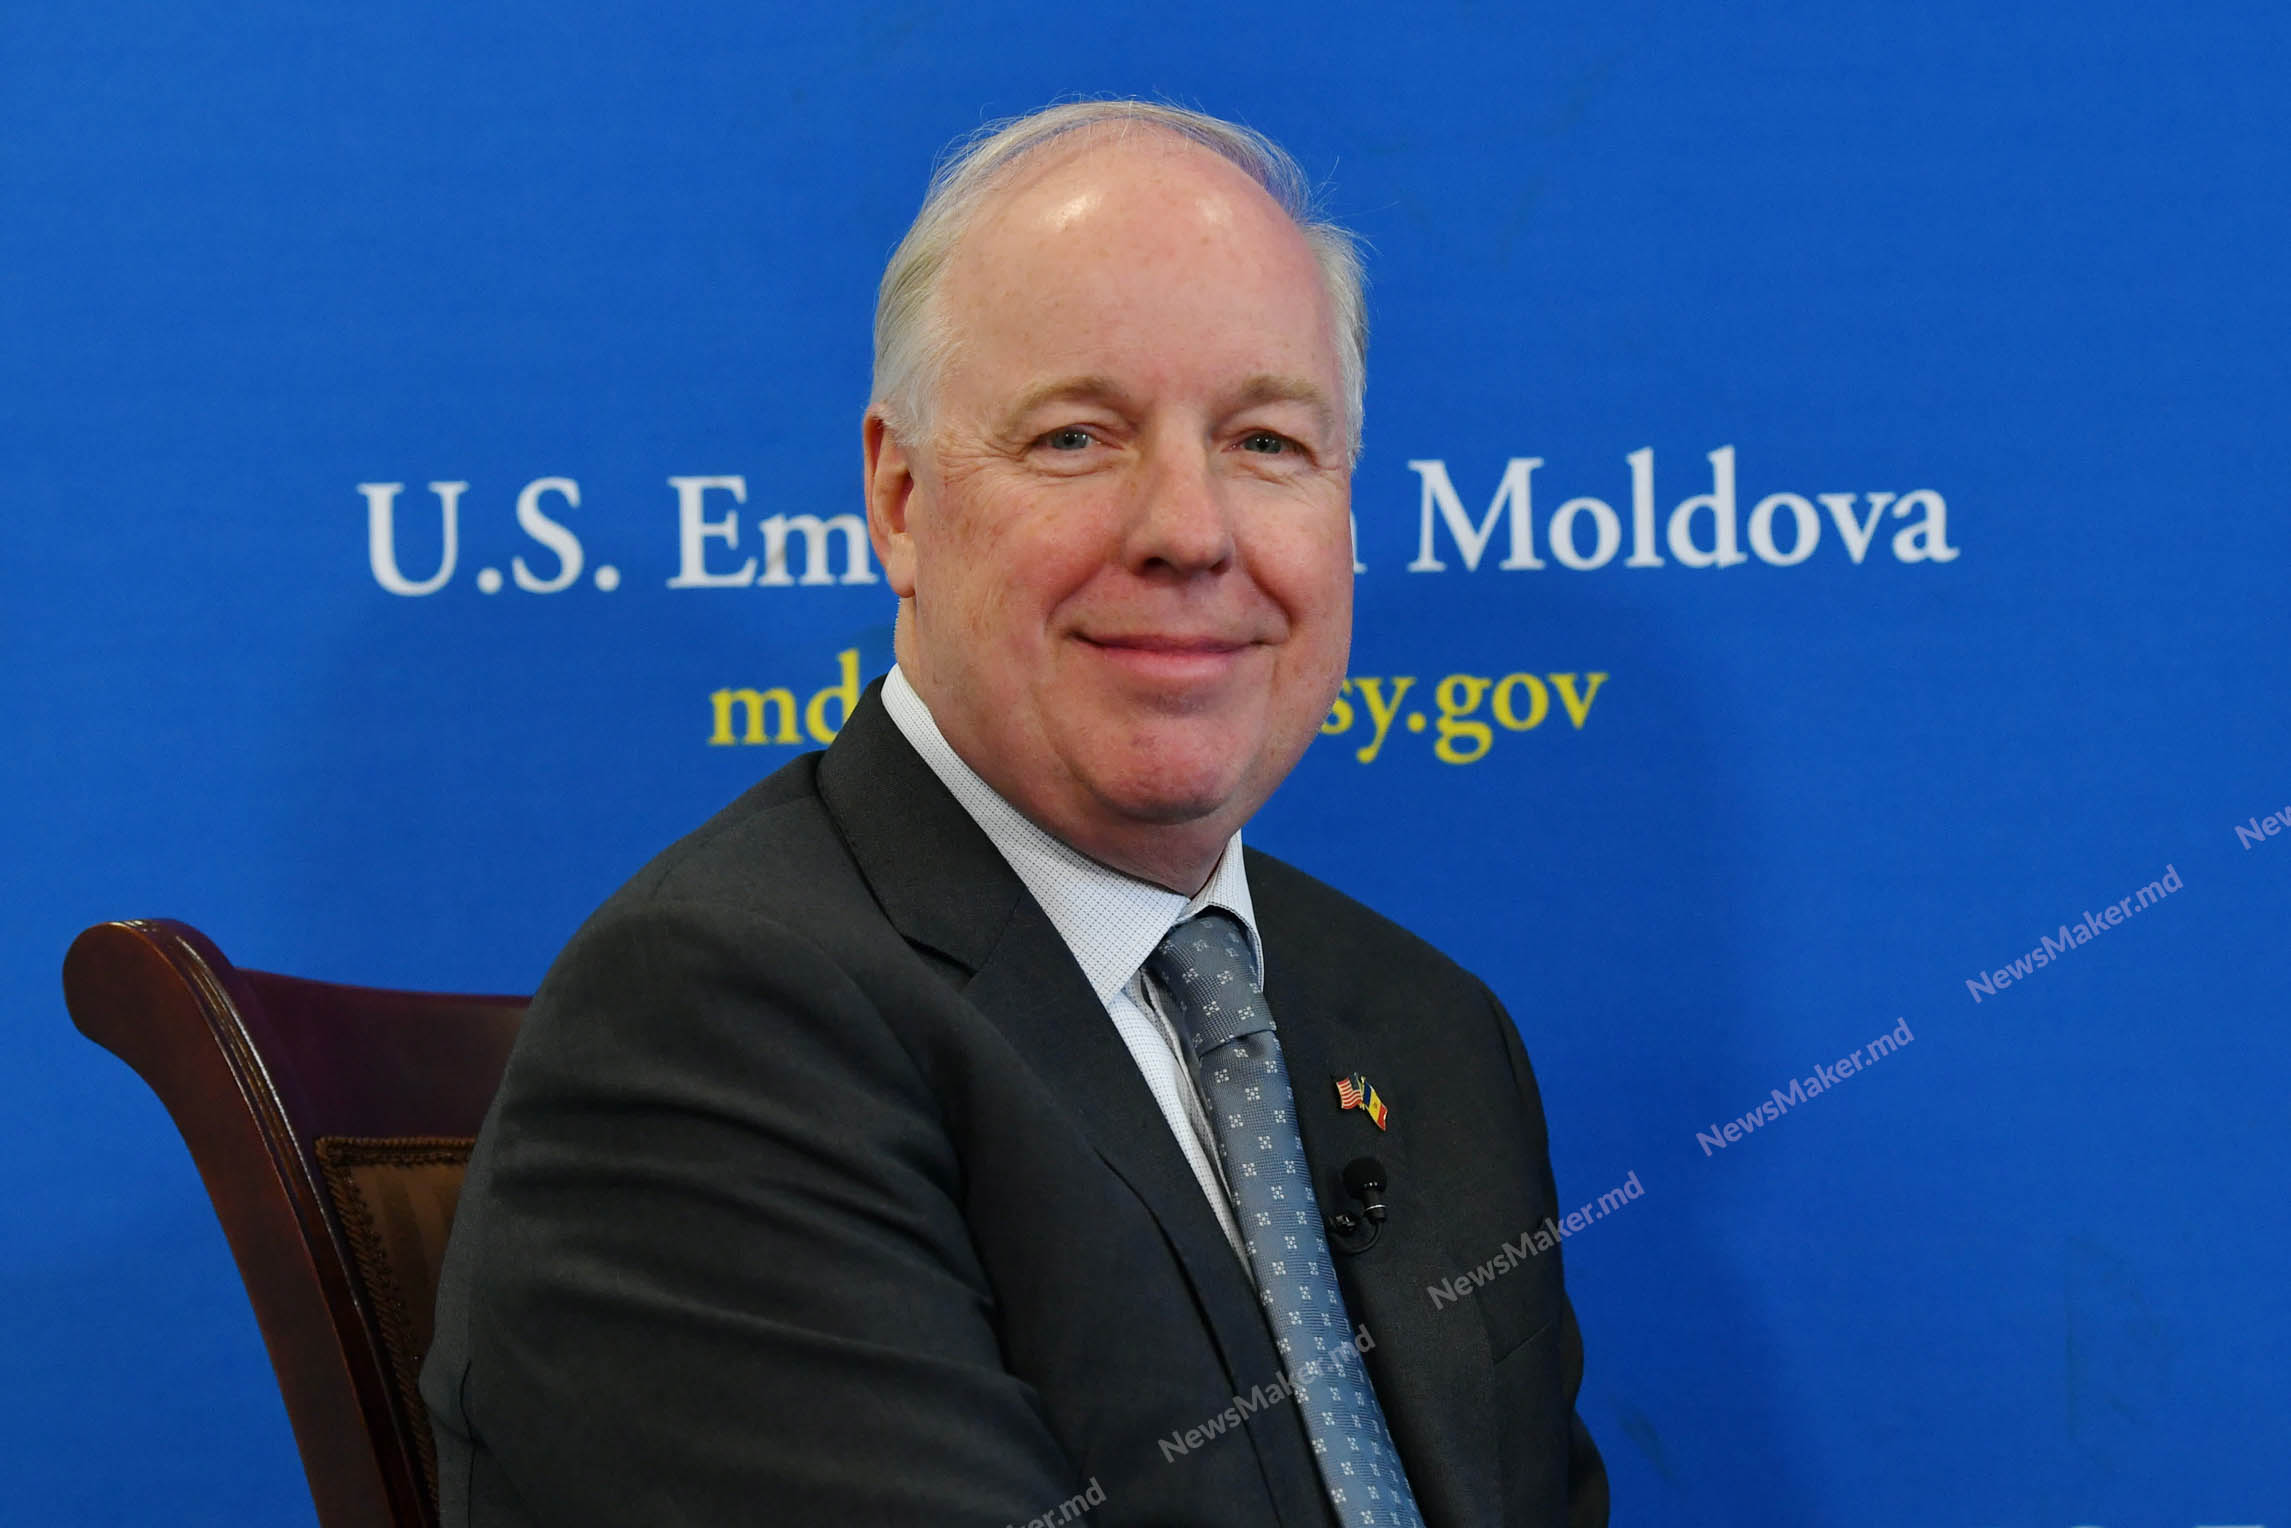 NM Espresso: о визите в Кишинев госсекретаря США, новом тендере в аэропорту и об «очень опасной точке для демократии» в Молдове